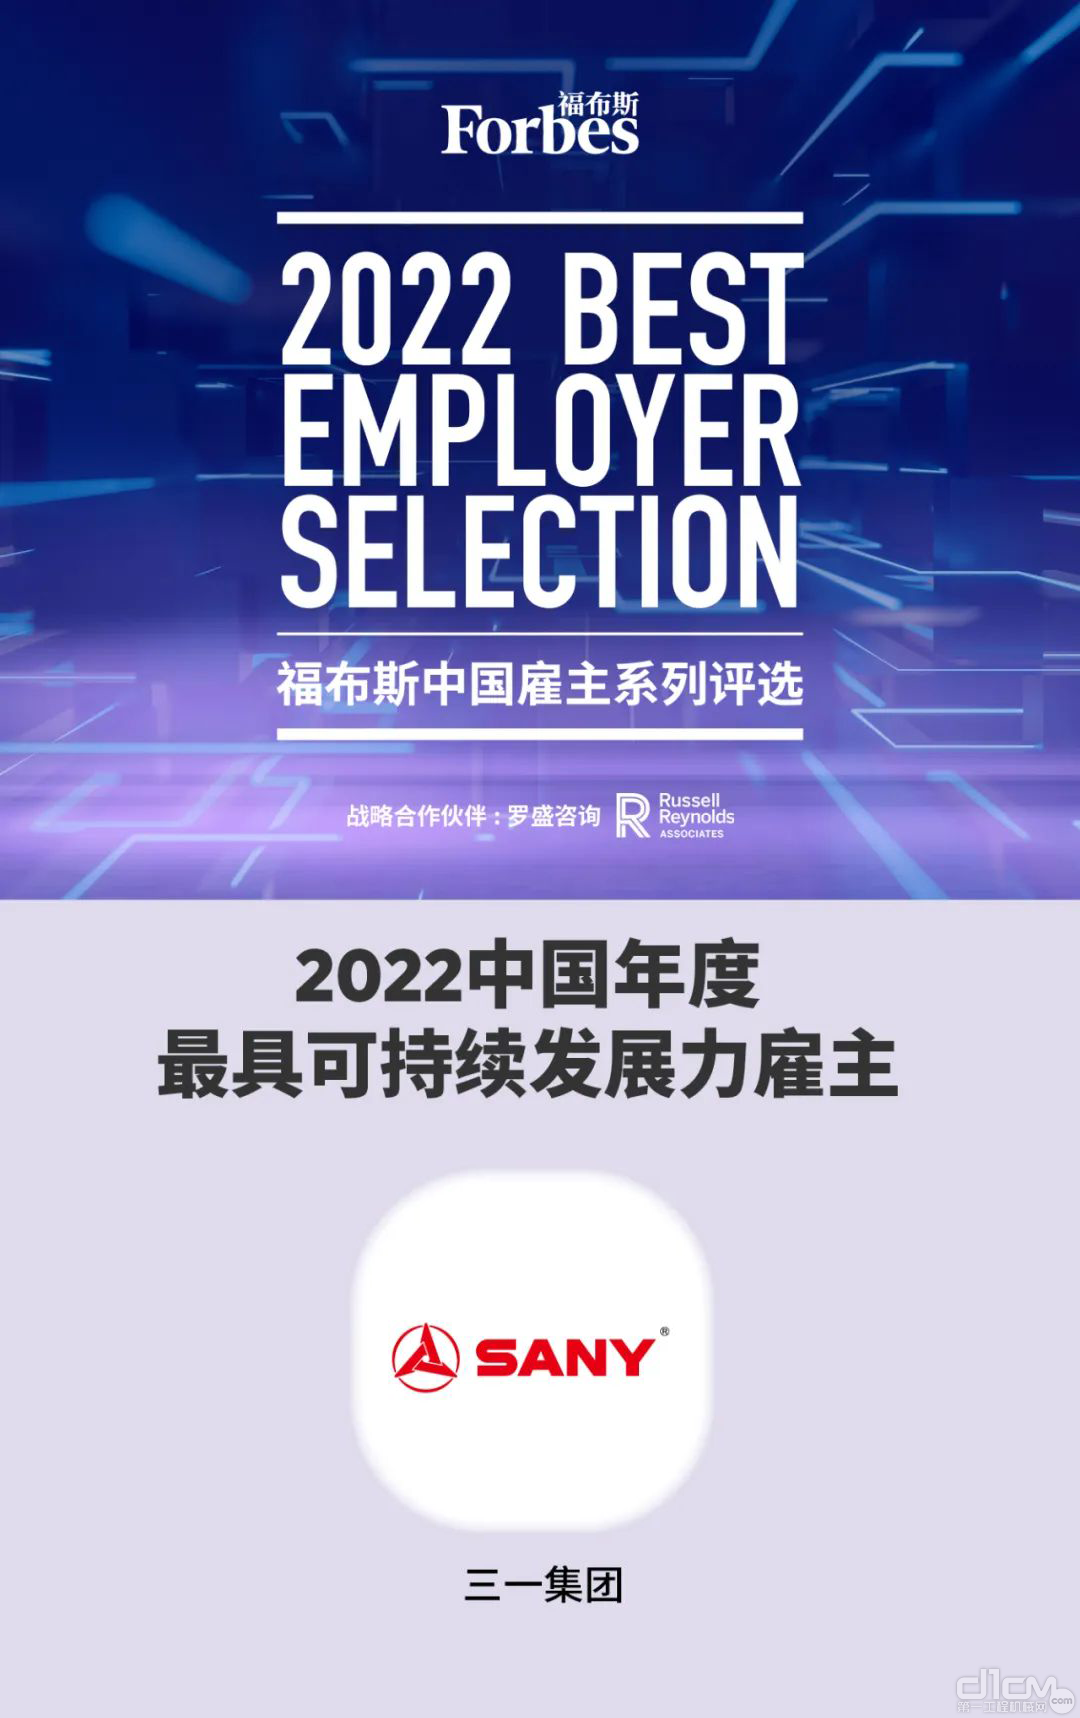 三一集团荣获“2022中国年度最具可持续发展力雇主”称号